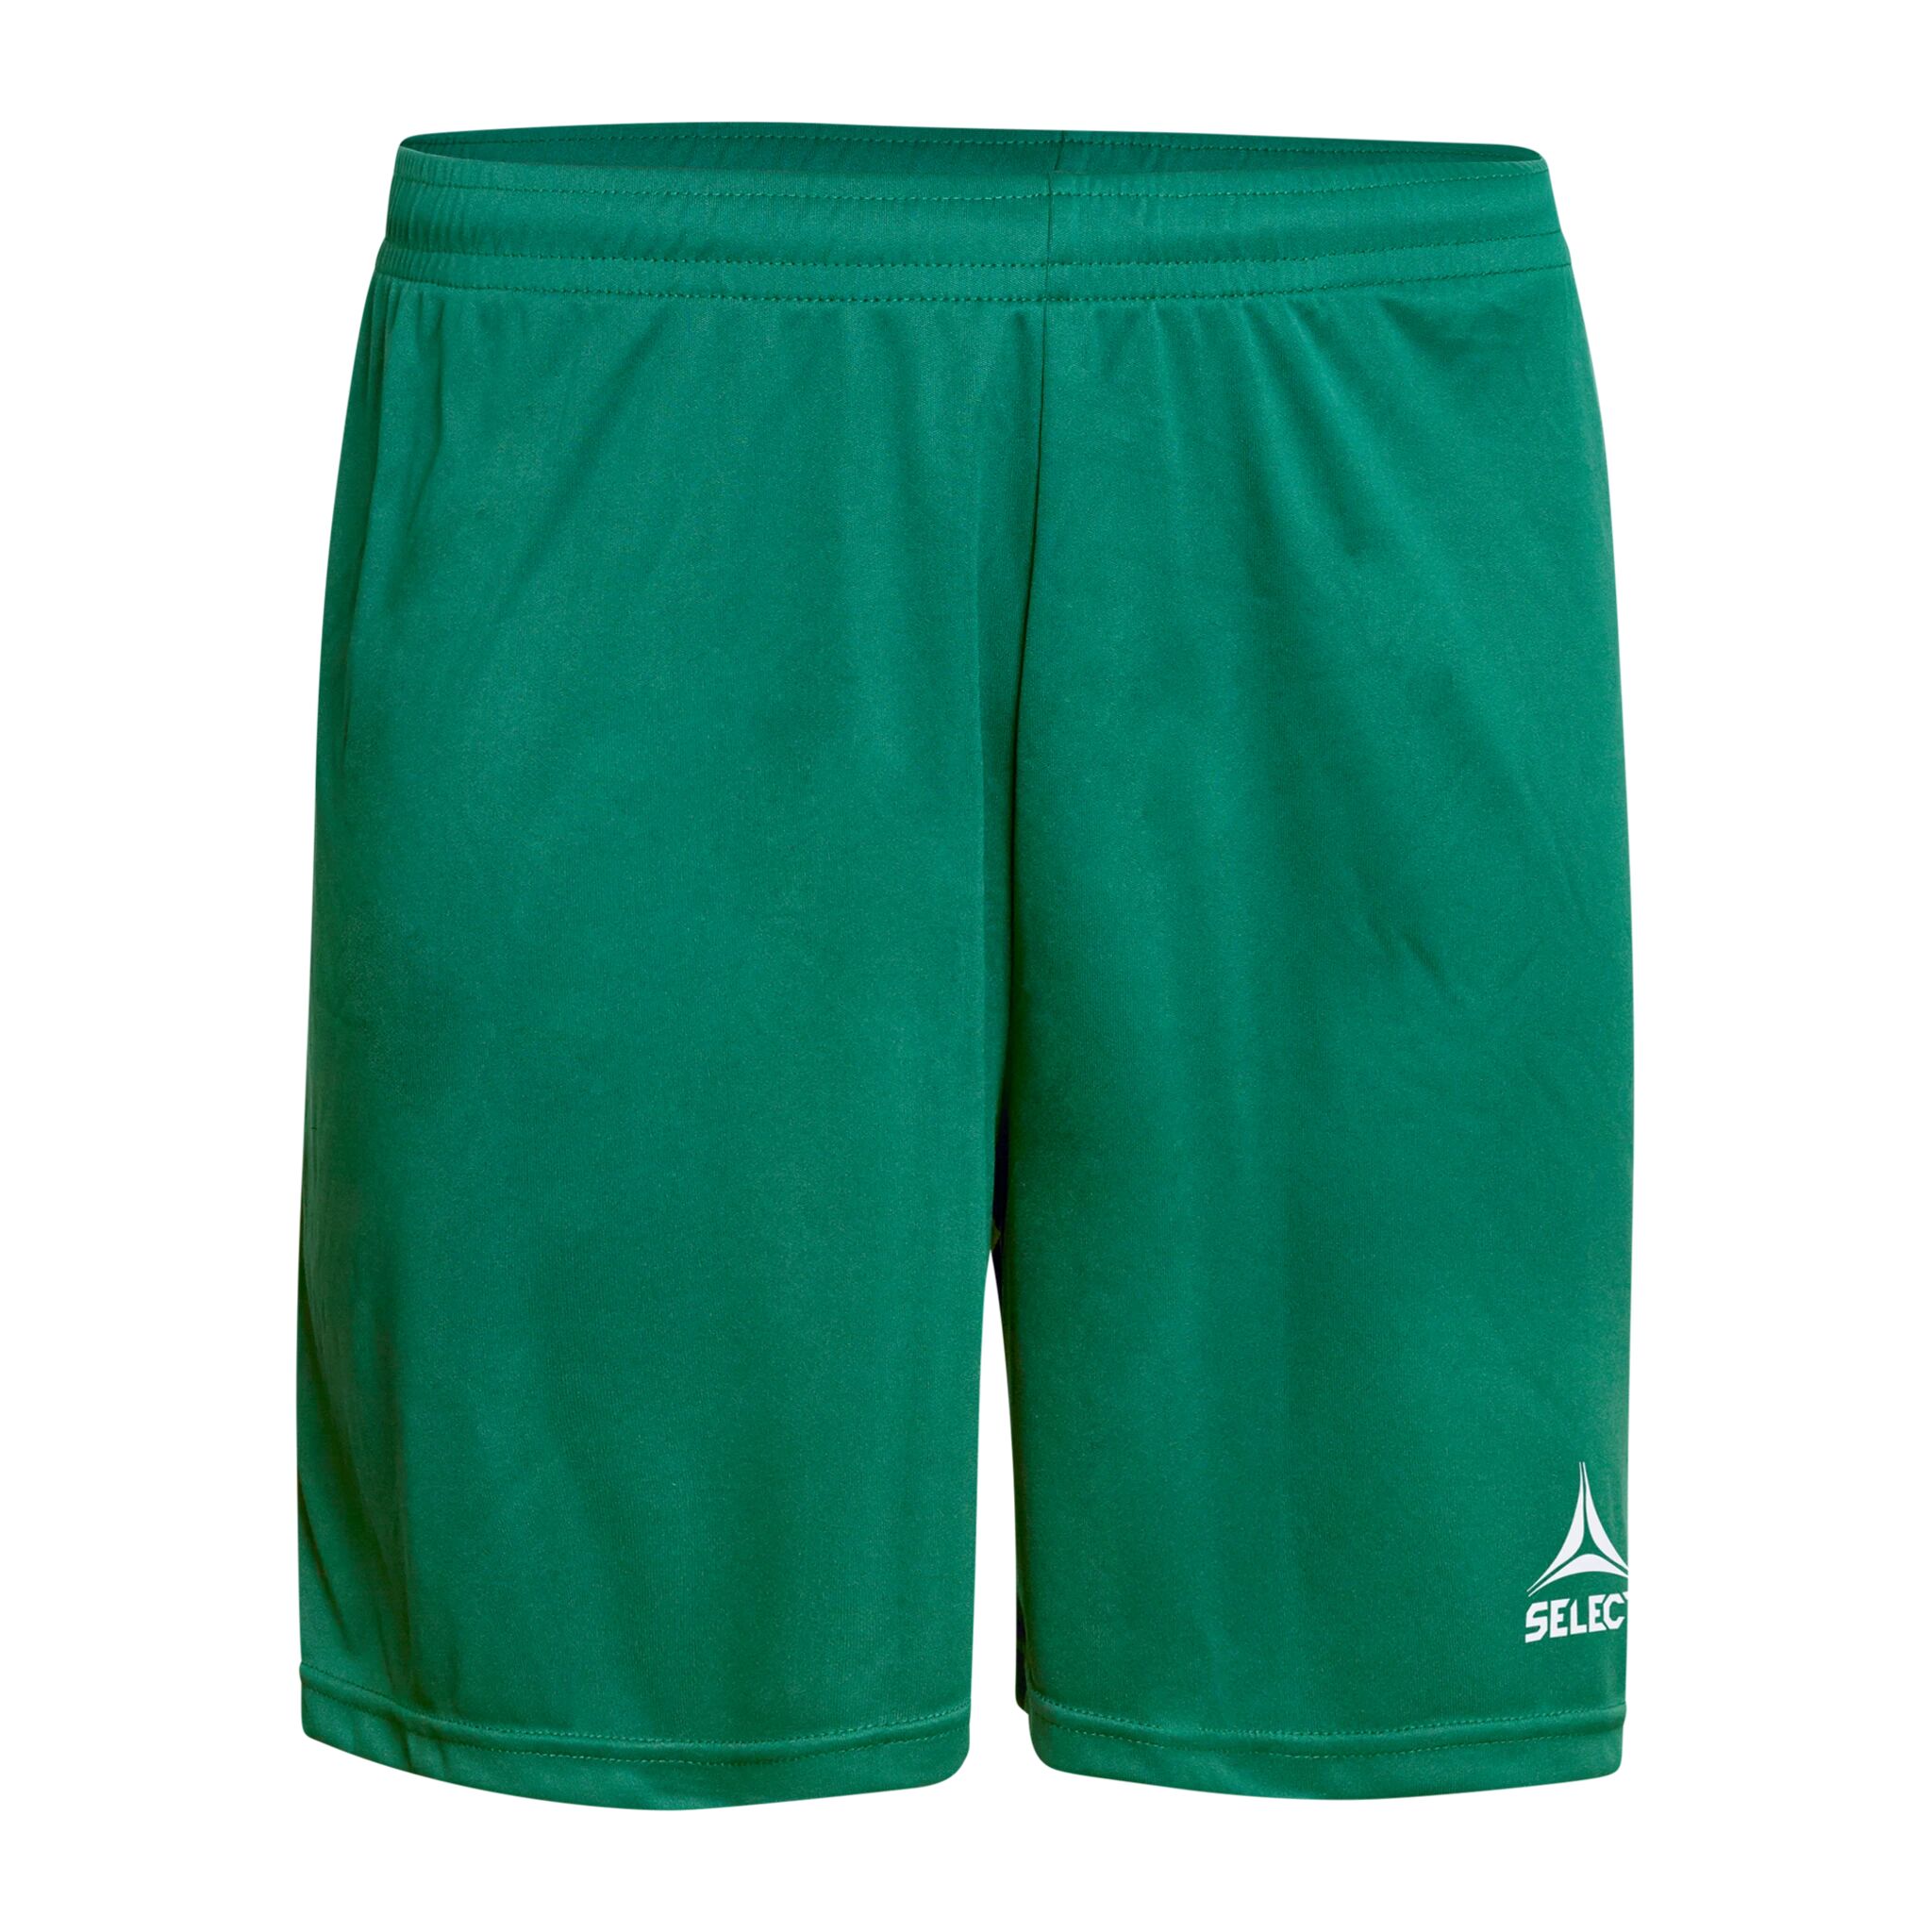 Select Player shorts Pisa, shorts senior M Green